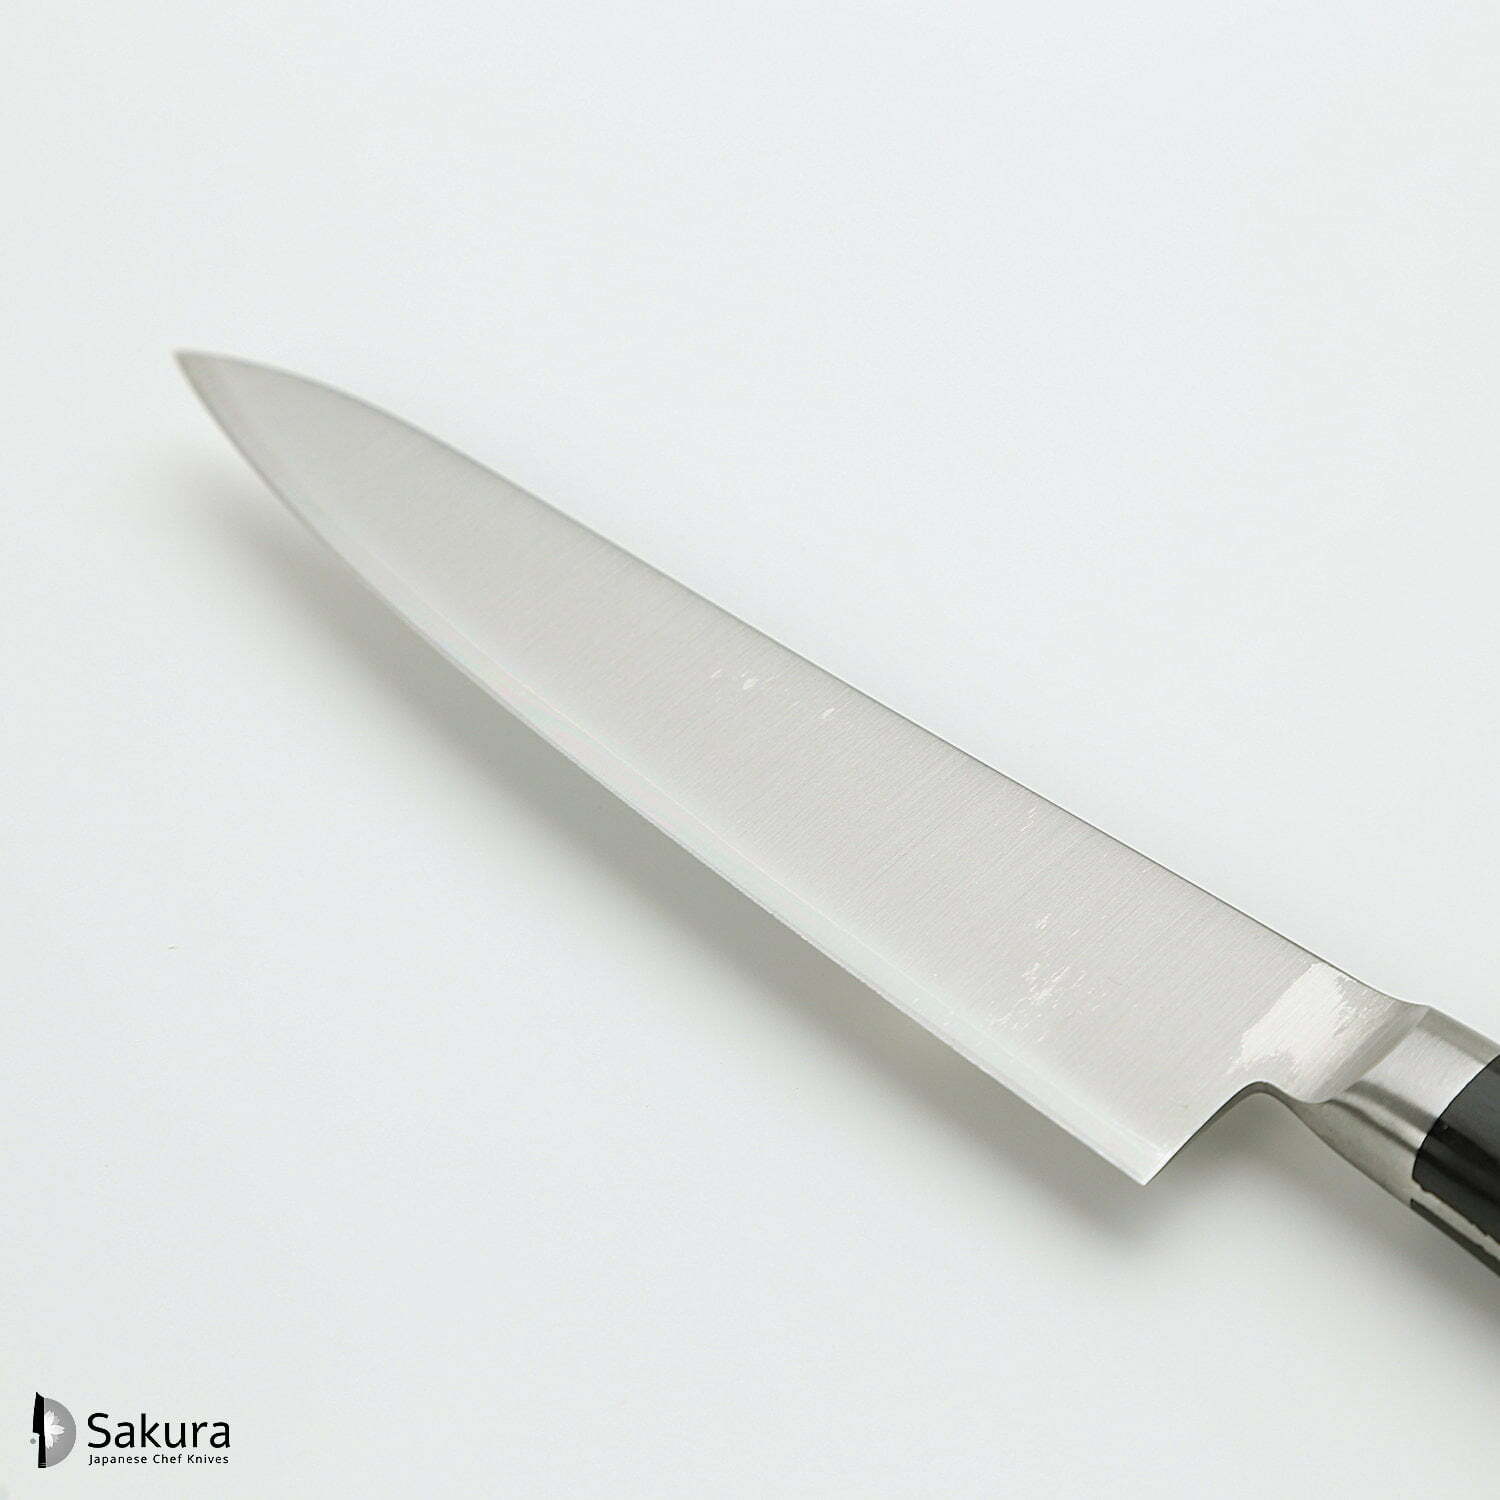 סכין עזר קטנה רב-תכליתית פֶּטִי 135מ״מ מחוזקת 3 שכבות: פלדת פחמן יפנית מתקדמת מסוג R2/SG2 עטופה פלדת אל-חלד גימור מבריק ג׳יקו סאקאיי יפן